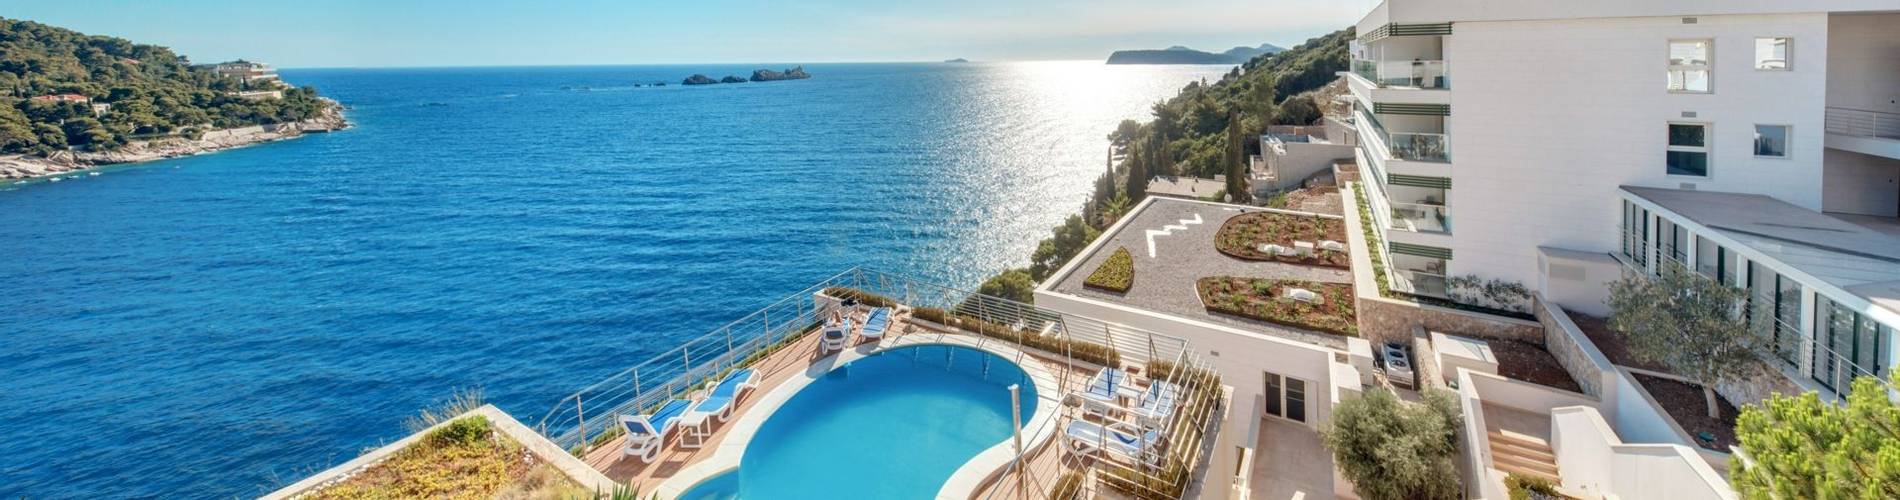 Hotel More, Dubrovnik, Croatia (2).jpg